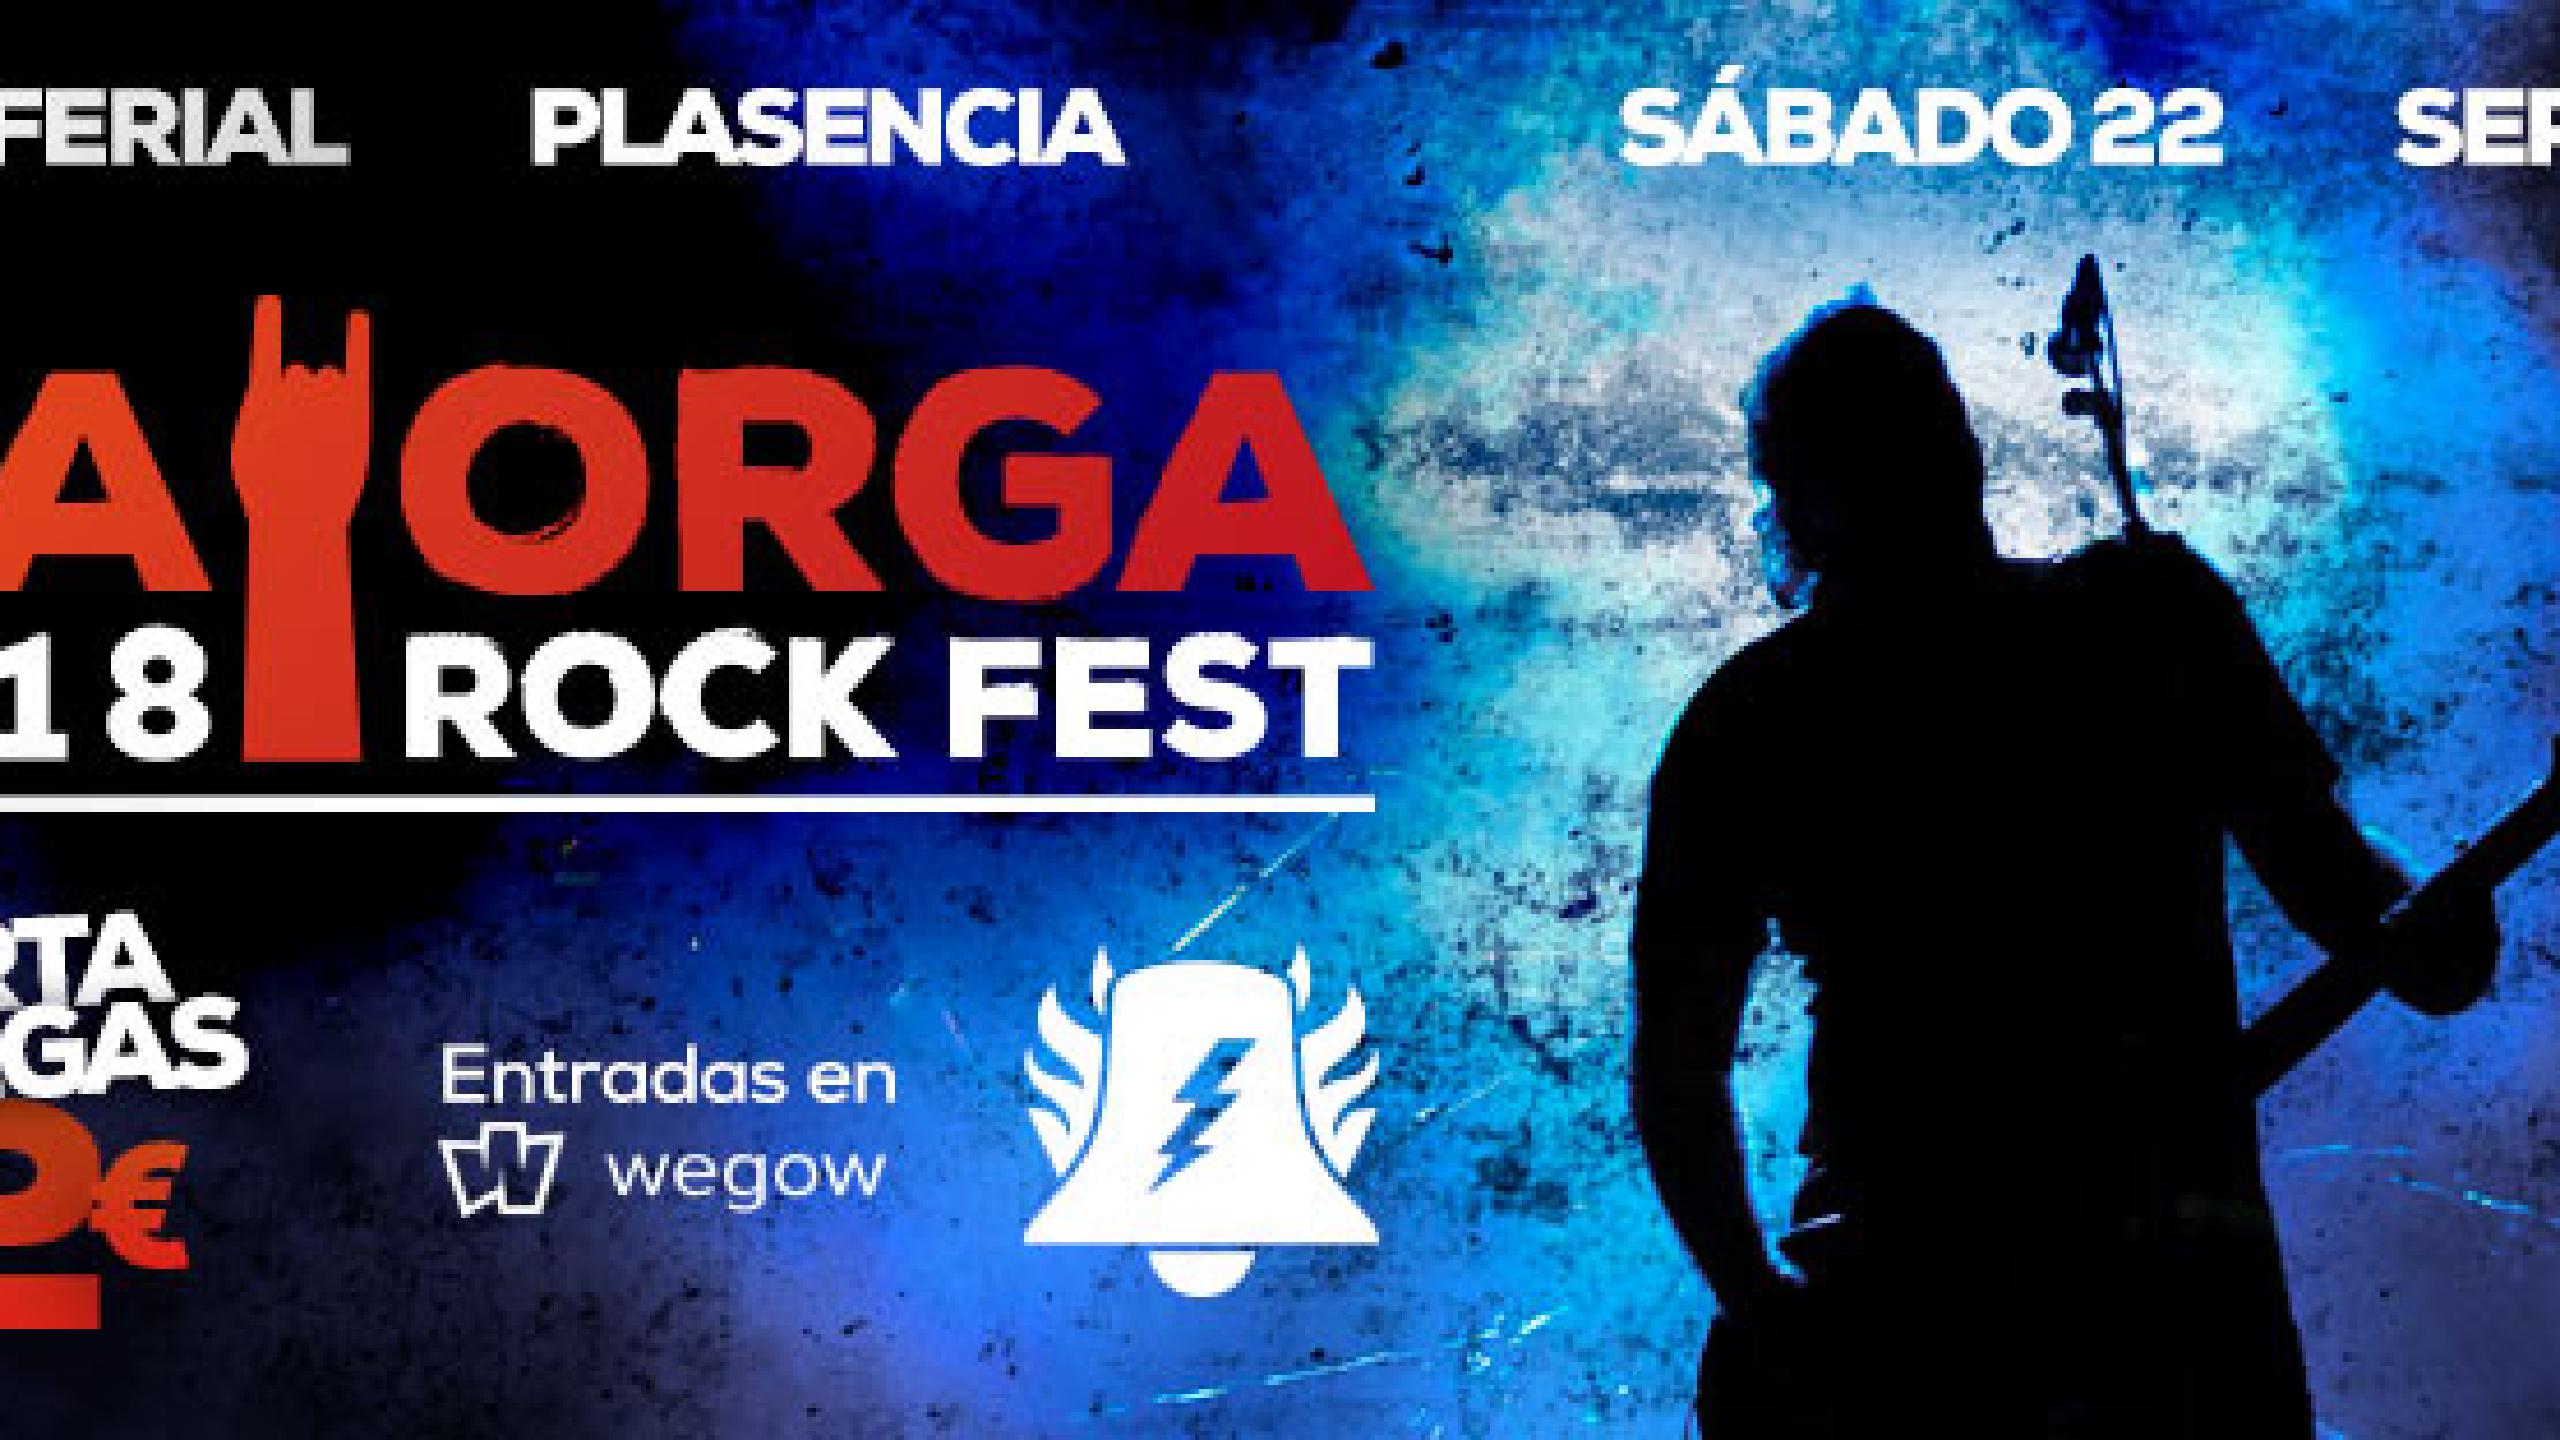 Fotografía promocional de Mayorga RockFest 2018